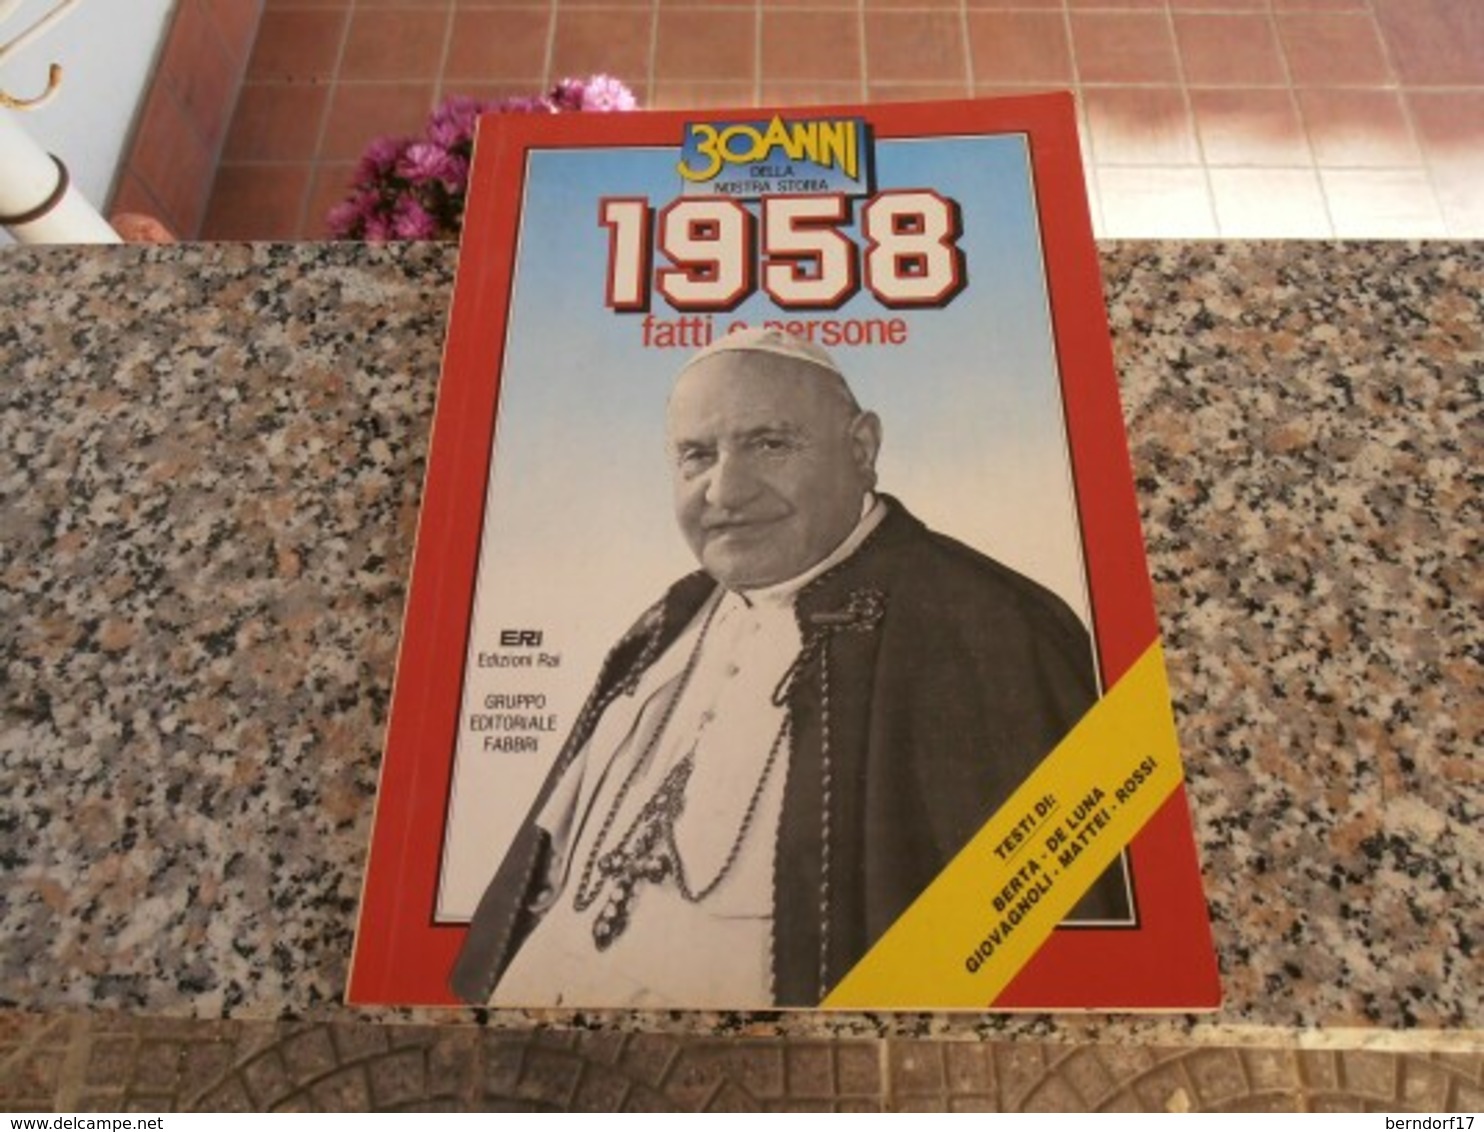 30 Anni Della Nostra Storia 1958 - Society, Politics & Economy